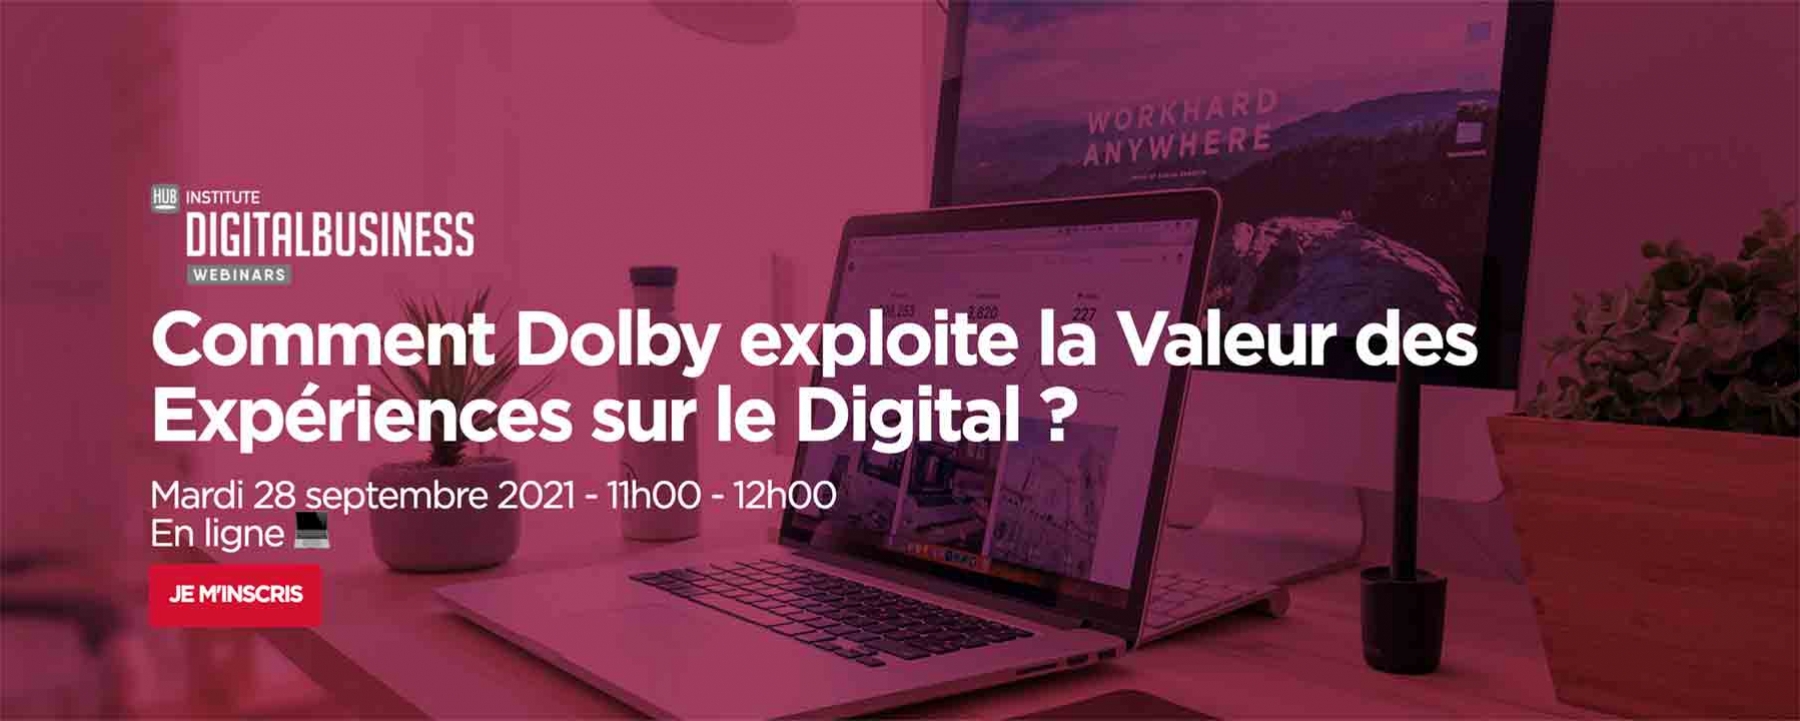 Comment Dolby exploite la Valeur des Expériences sur le Digital ? le 28 septembre 2021 en ligne